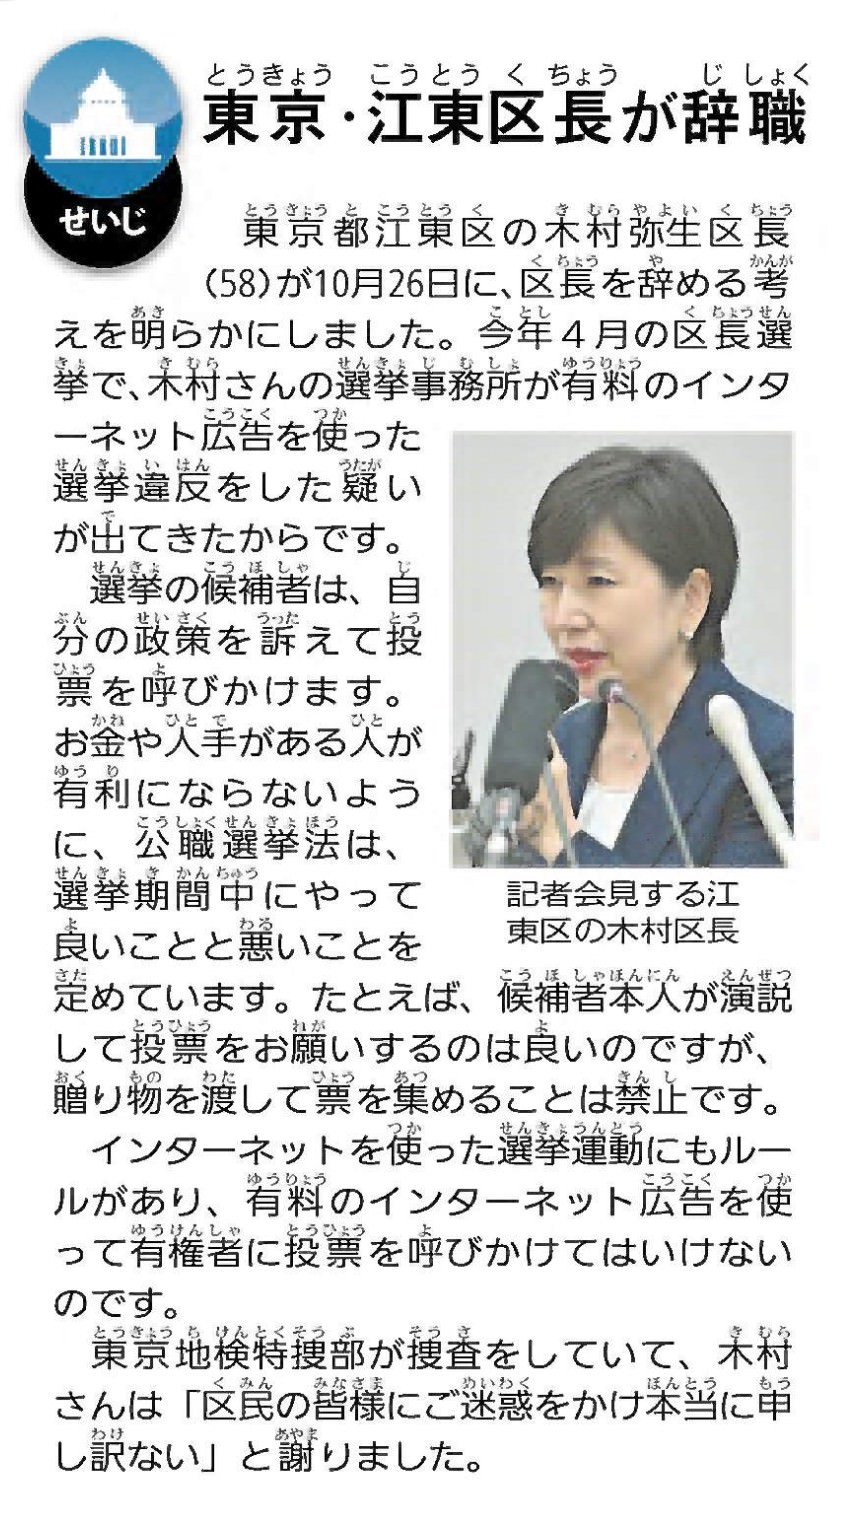 ニュースクリップ　政治の記事「東京・江東区長が辞職」の画像